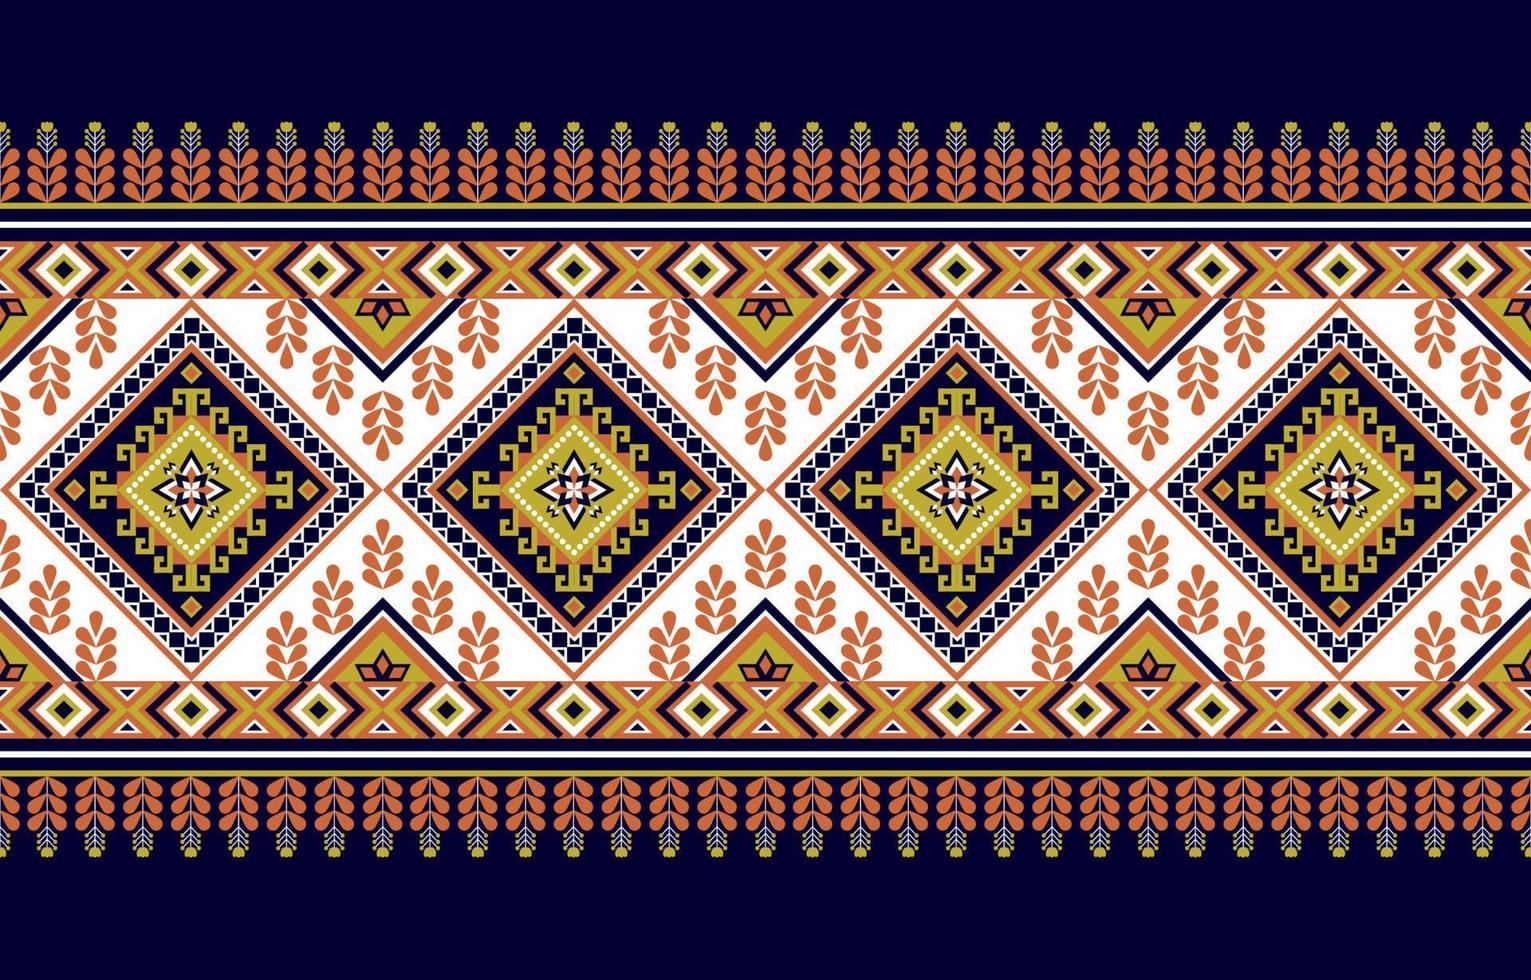 geometrisches ethnisches orientalisches Muster traditionell. Blumendekoration. design für hintergrund, teppich, tapeten, kleidung, verpackung, batic, stoff, vektor illustraion.stickstil.